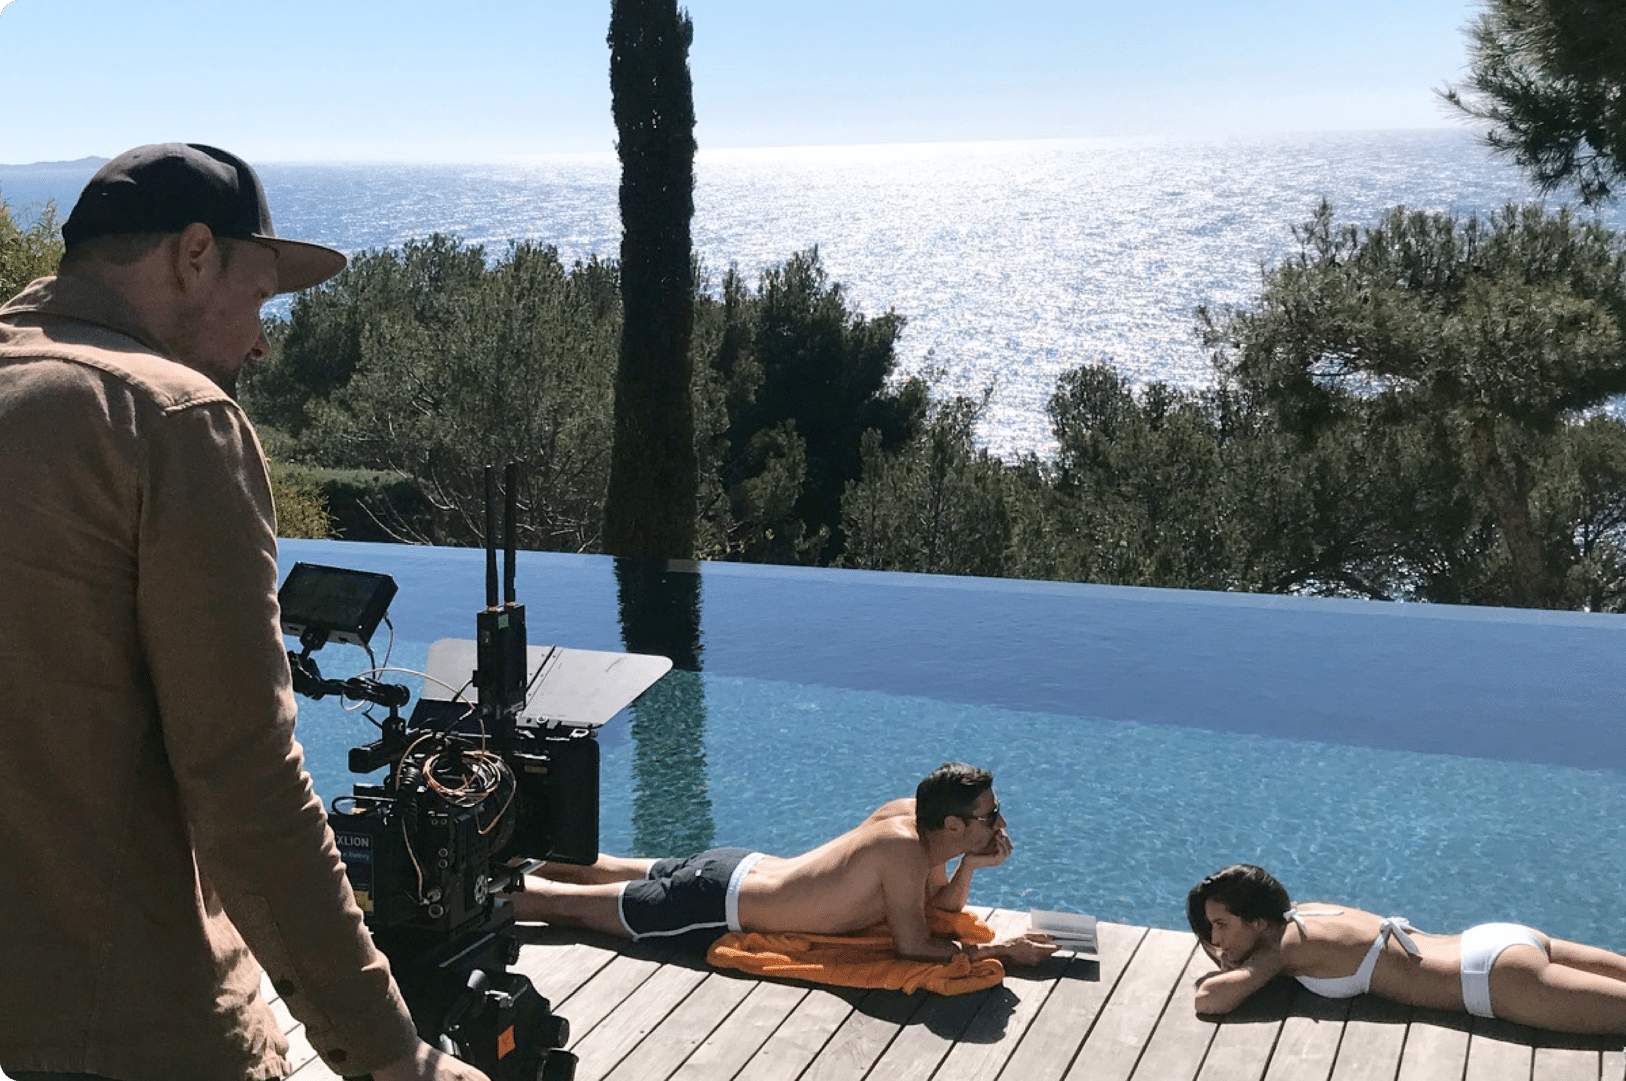 coxi-agence-communication-zodiac-robot-piscine-lancement produit-campagne-360°-tournage-vue-mer-horizon-sérénité-été-film